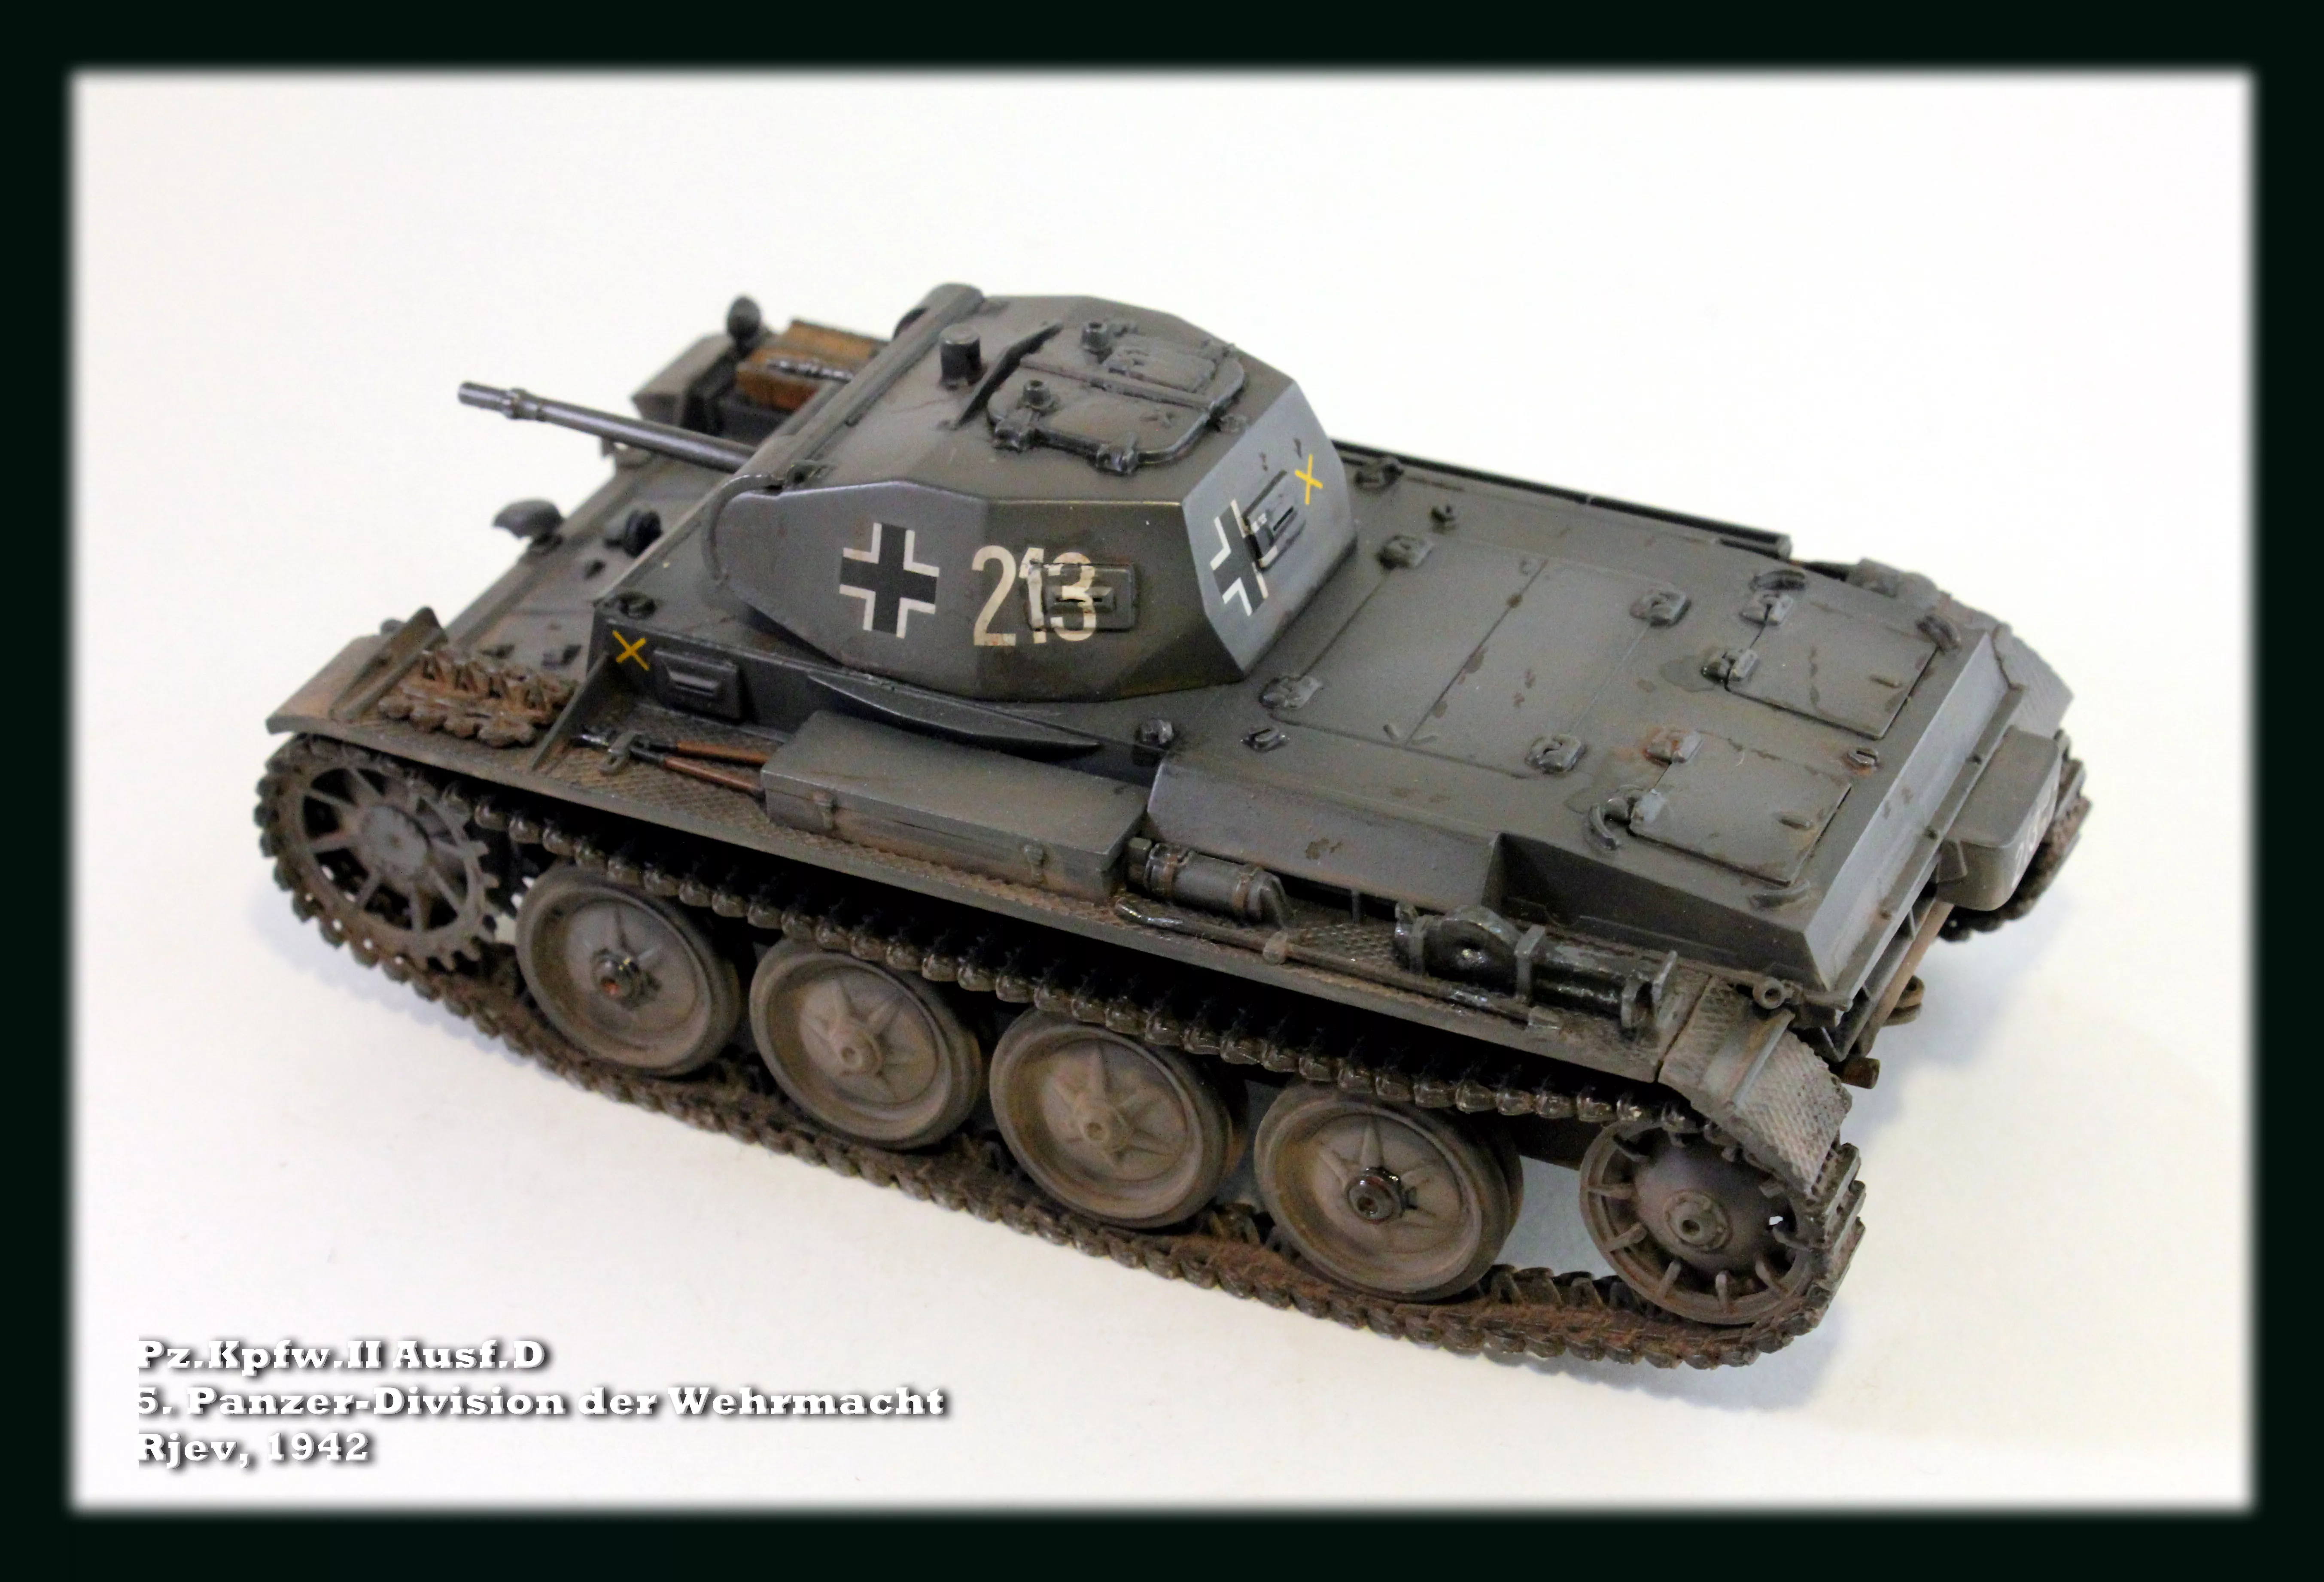 Немецкий лёгкий танк Pz.Kpfw.II Ausf.D